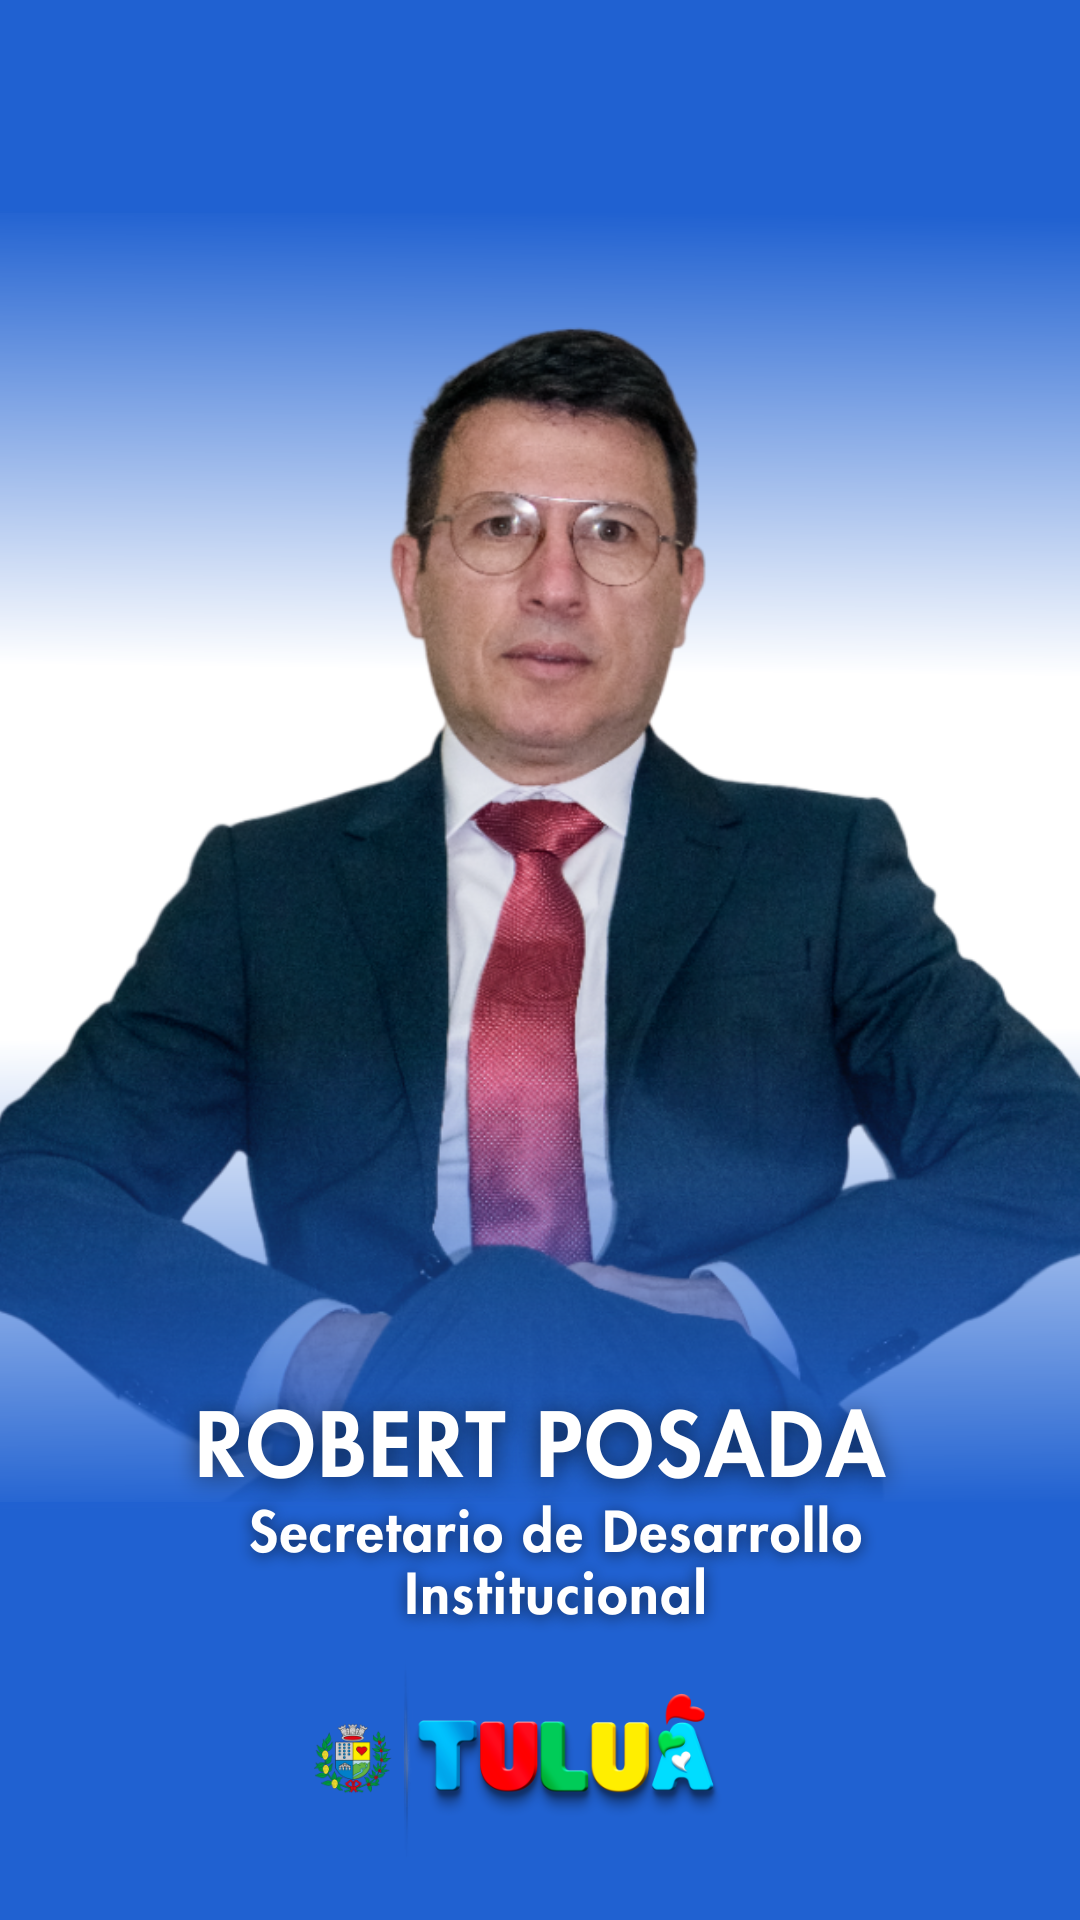 Robert Posada